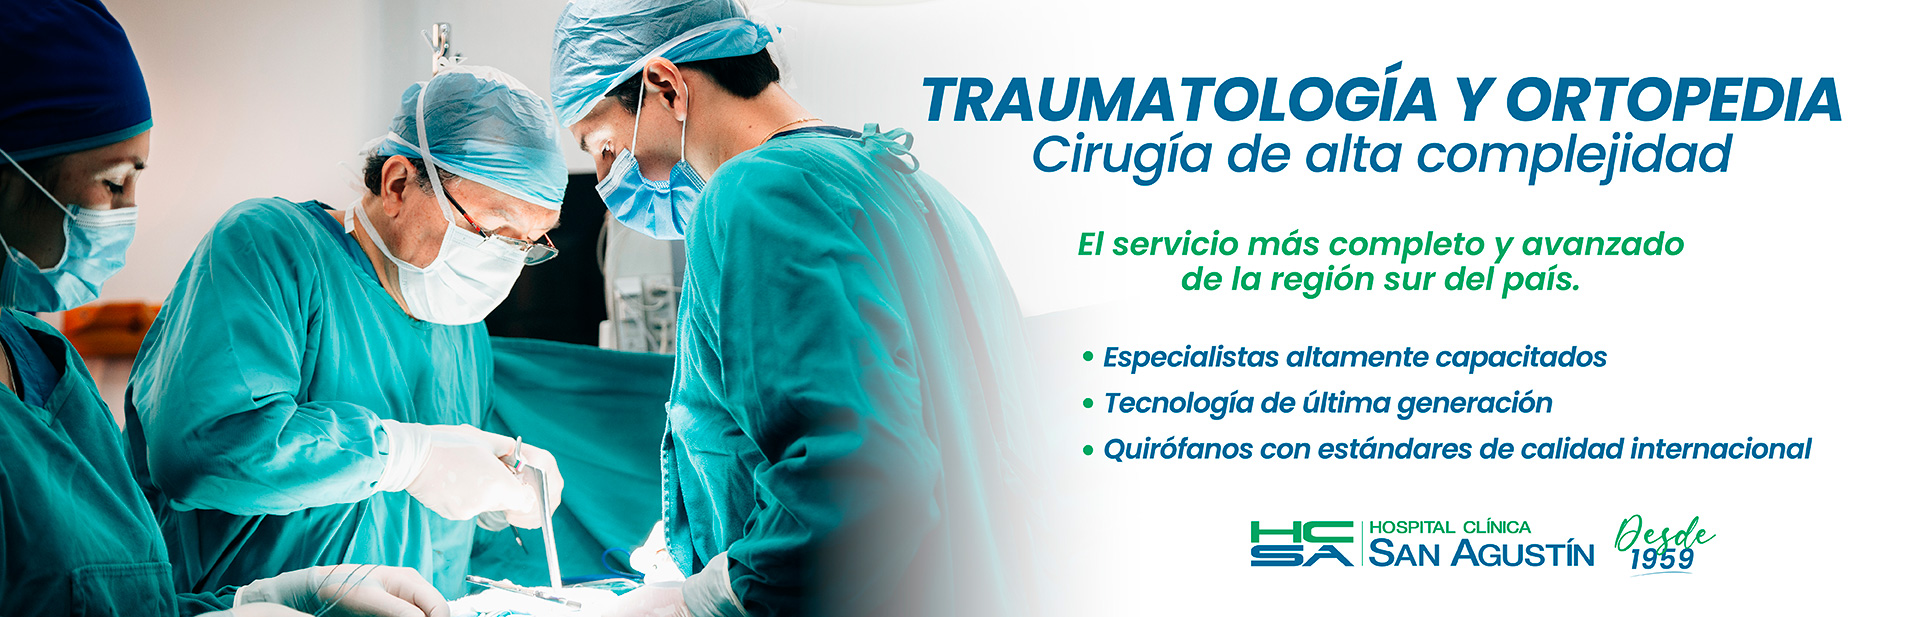 Traumatología y Ortopedia | Hospital Clínica San Agustín